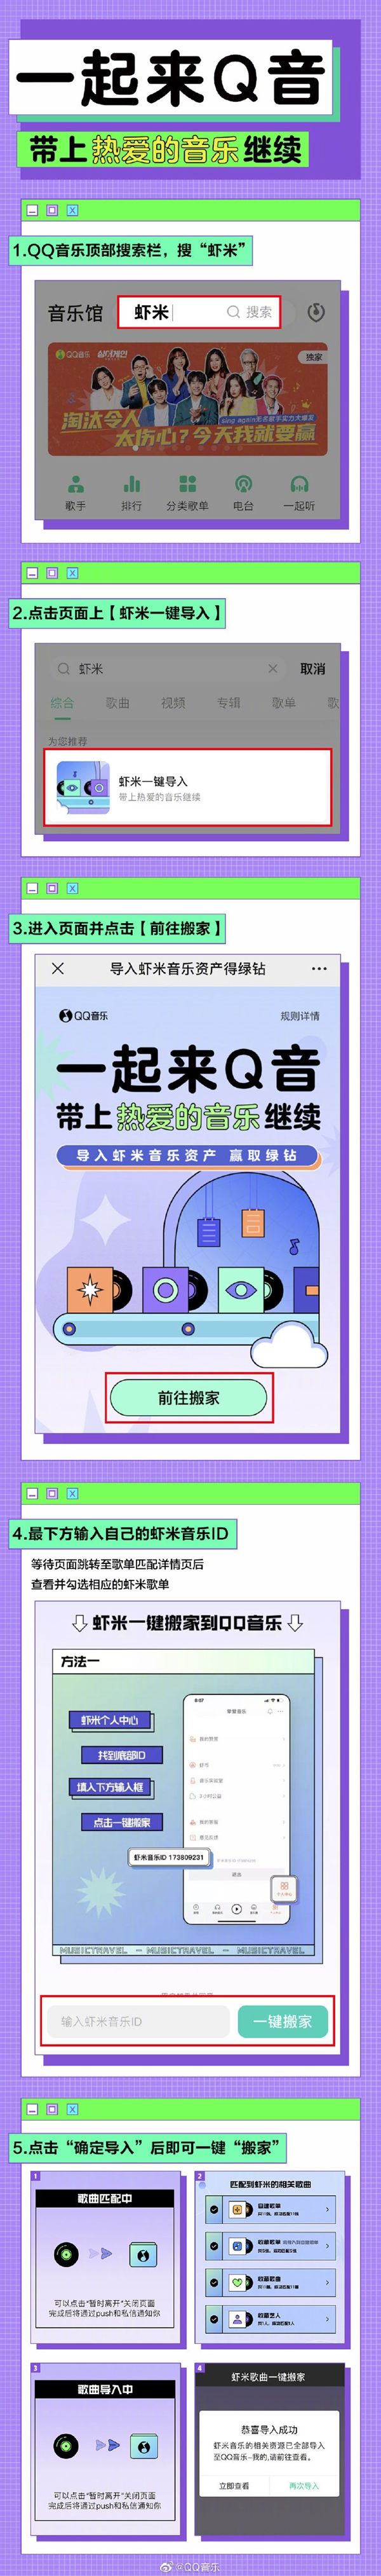 腾讯QQ音乐上线一键搬家功能抢用户推行付费音乐